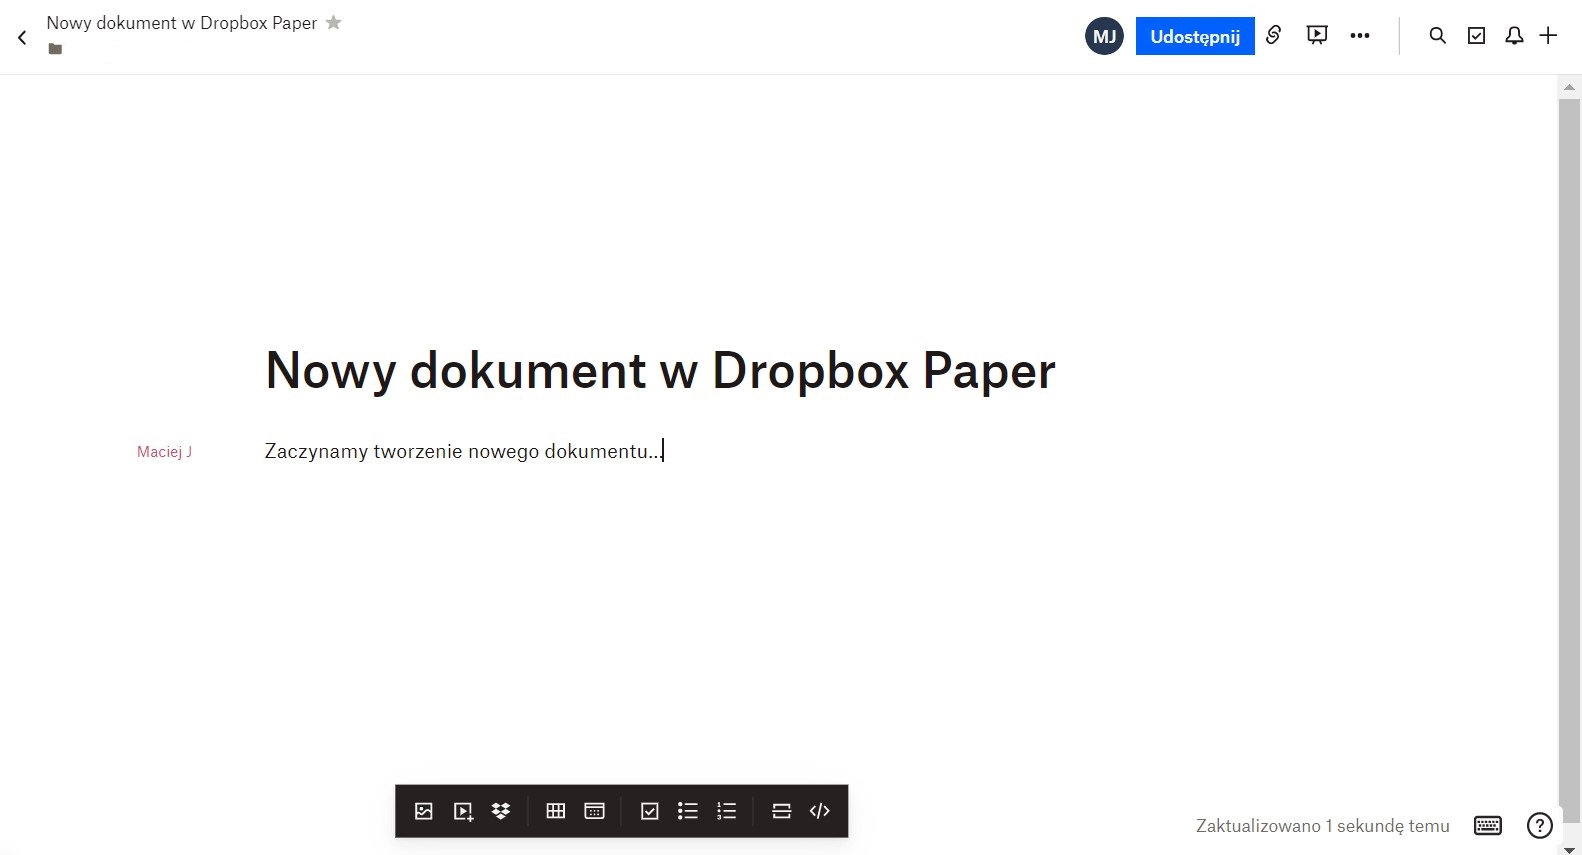 Czym jest Dropbox Paper i jak działa?